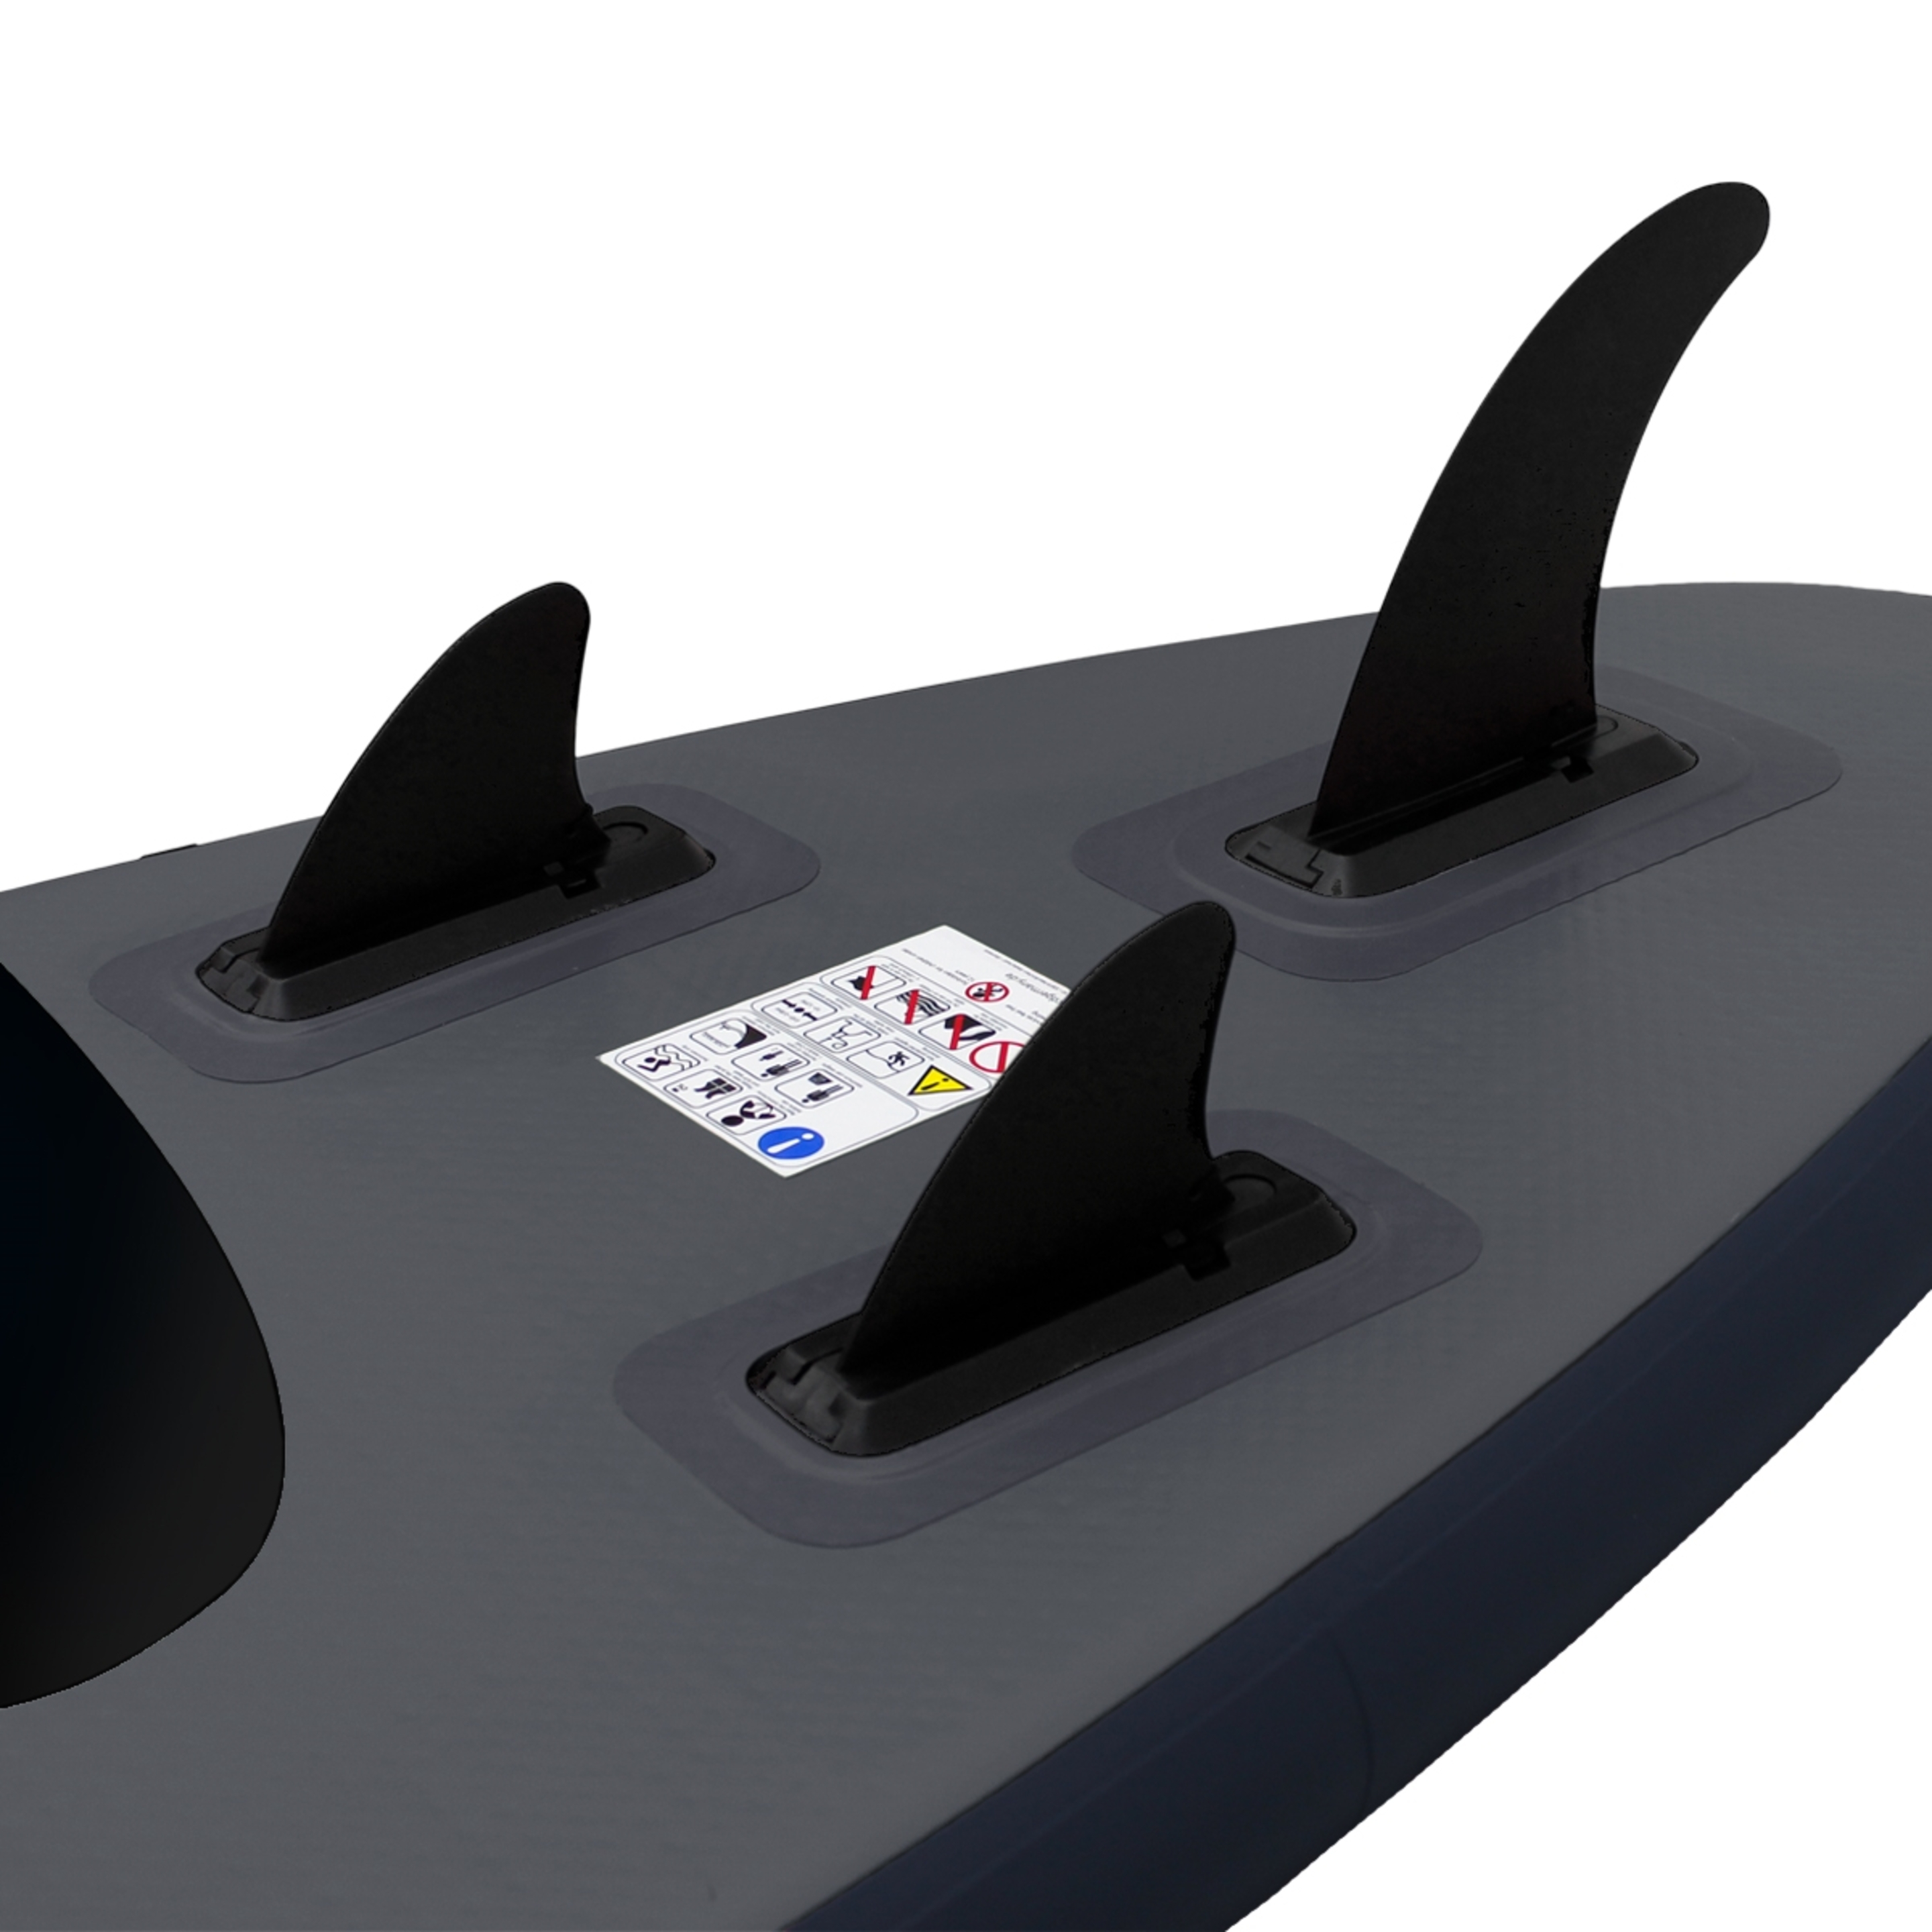 Tabla Hinchable Paddle Surf Sup 3 Makani Con Accesorios - Negro/Gris - Una tabla polivalente, muy estable  MKP